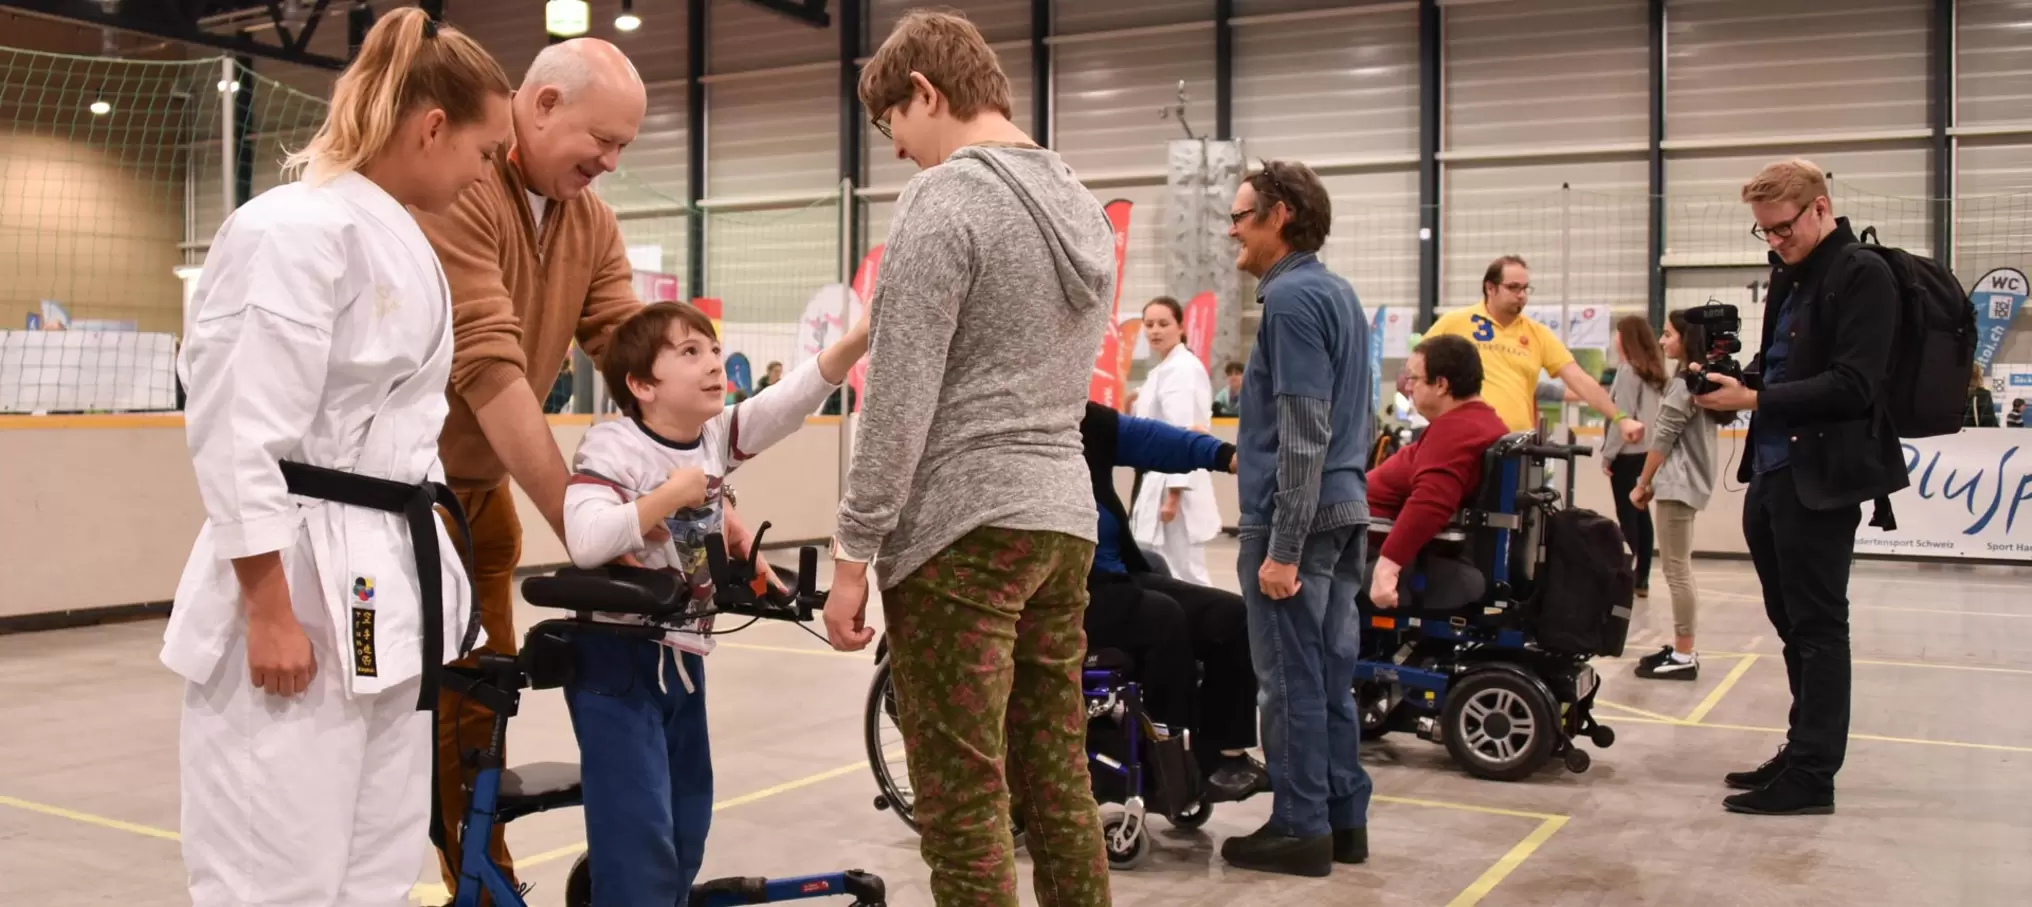 Lors d'événements tels que le Salon Swiss Handicap, les personnes handicapées et non handicapées se réunissent